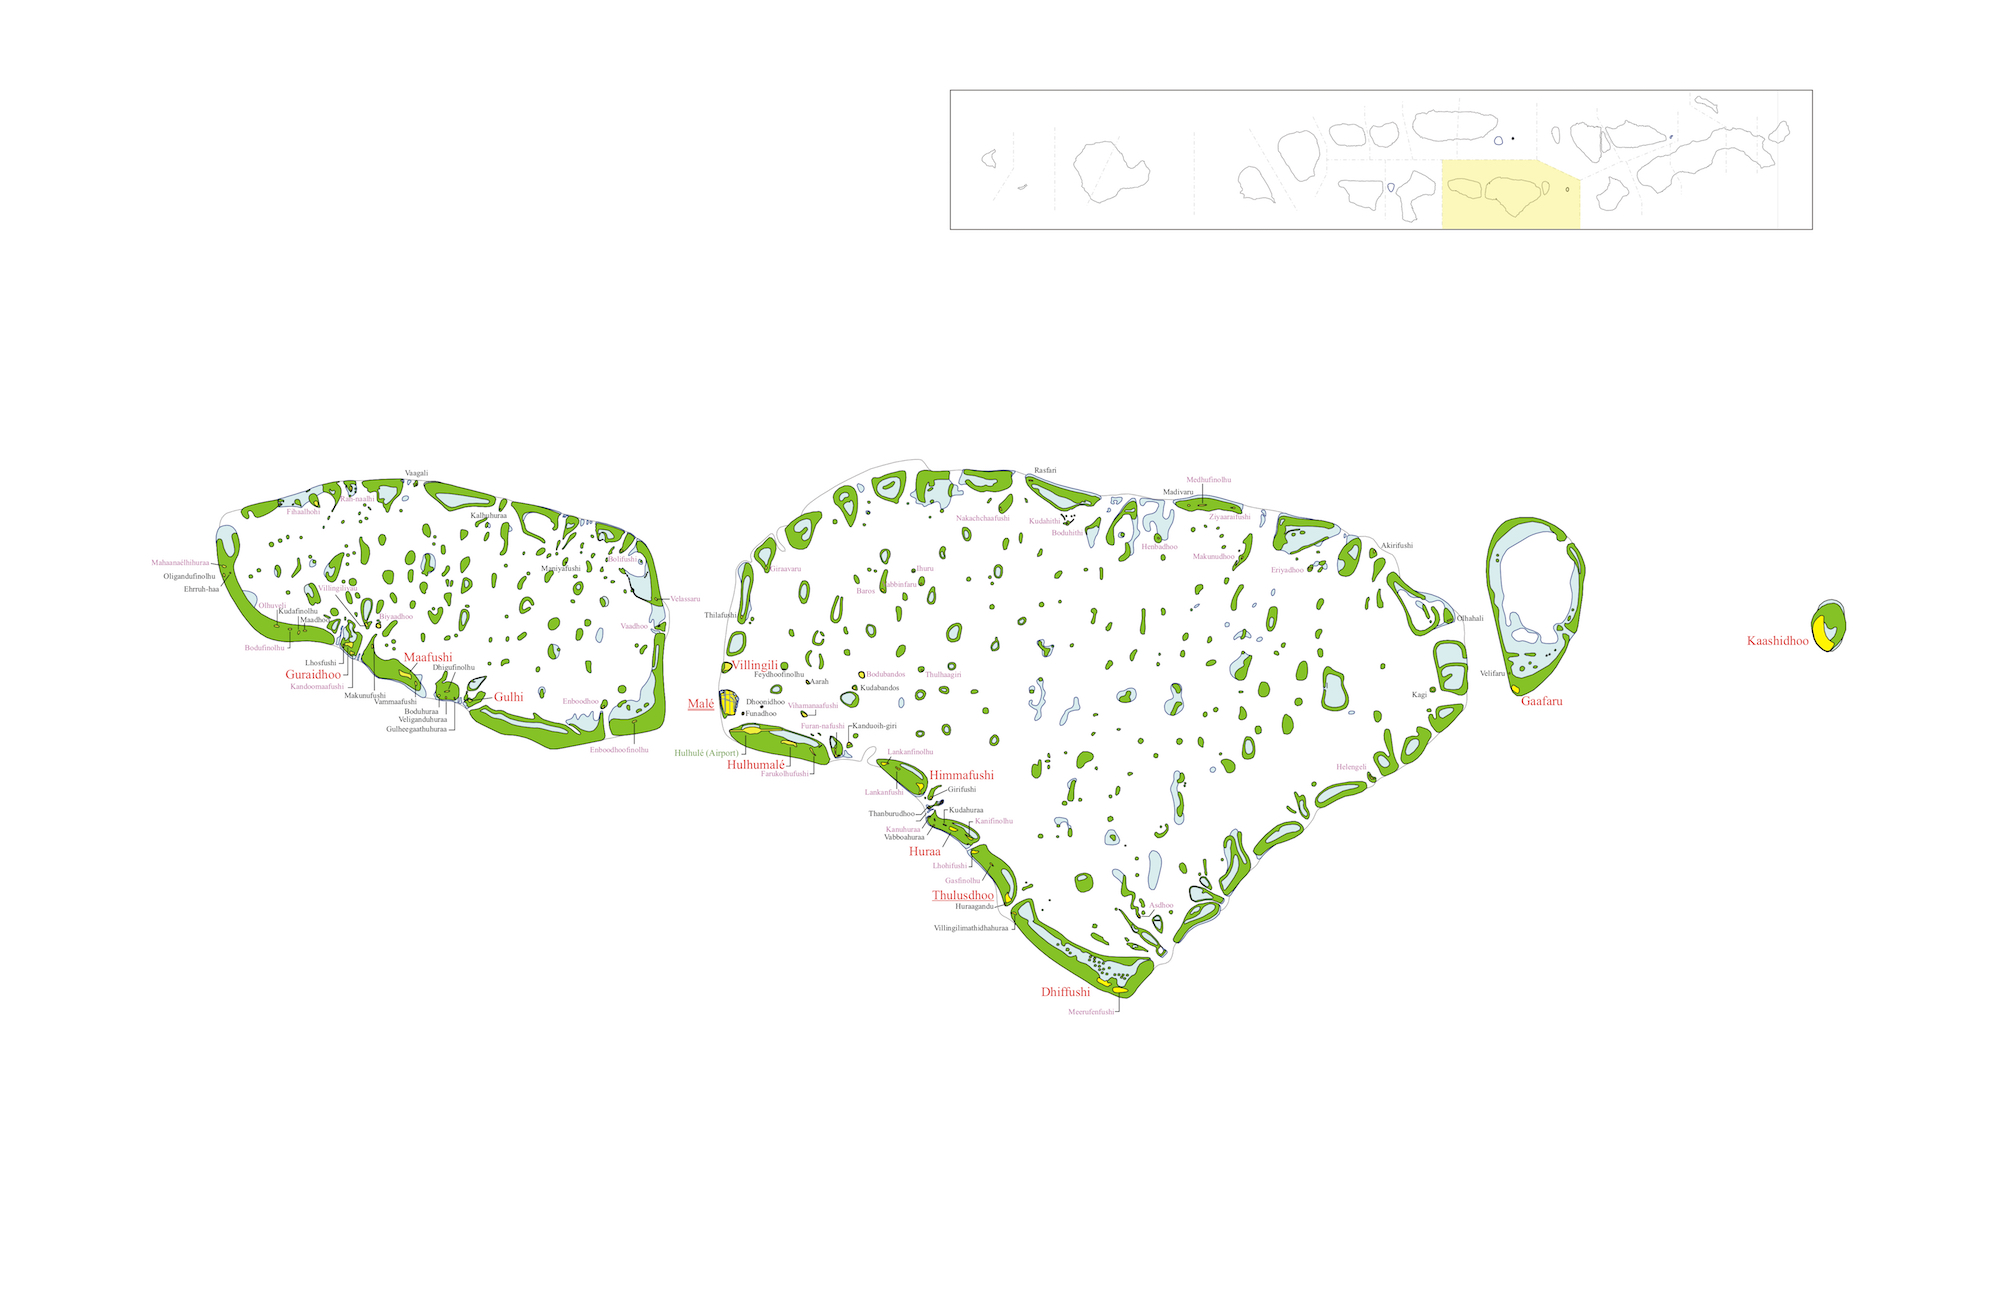 Maldives Kaafu Map Populationdata Net